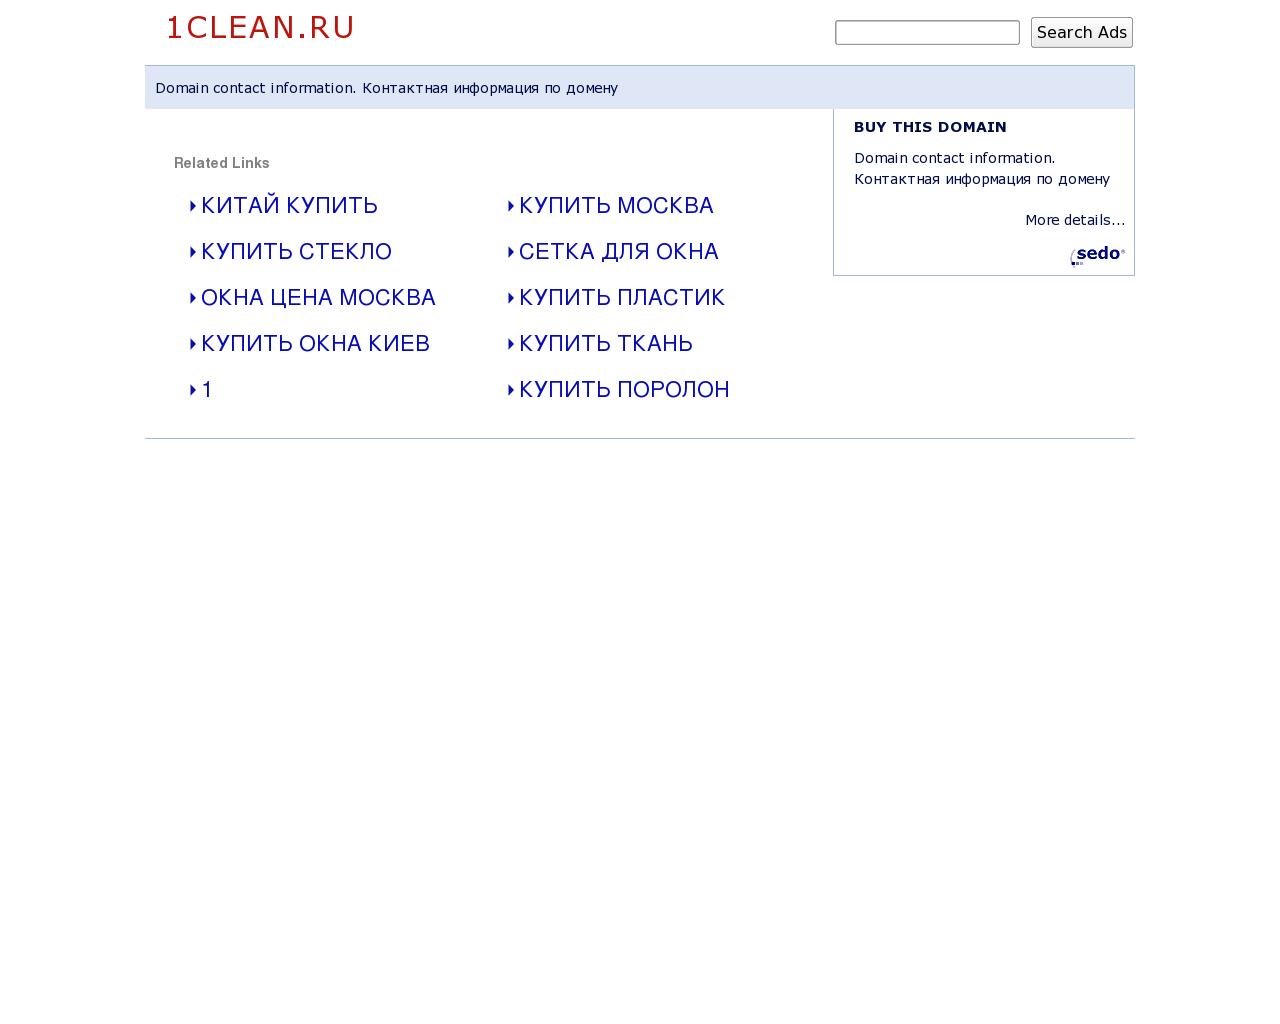 Изображение сайта 1clean.ru в разрешении 1280x1024